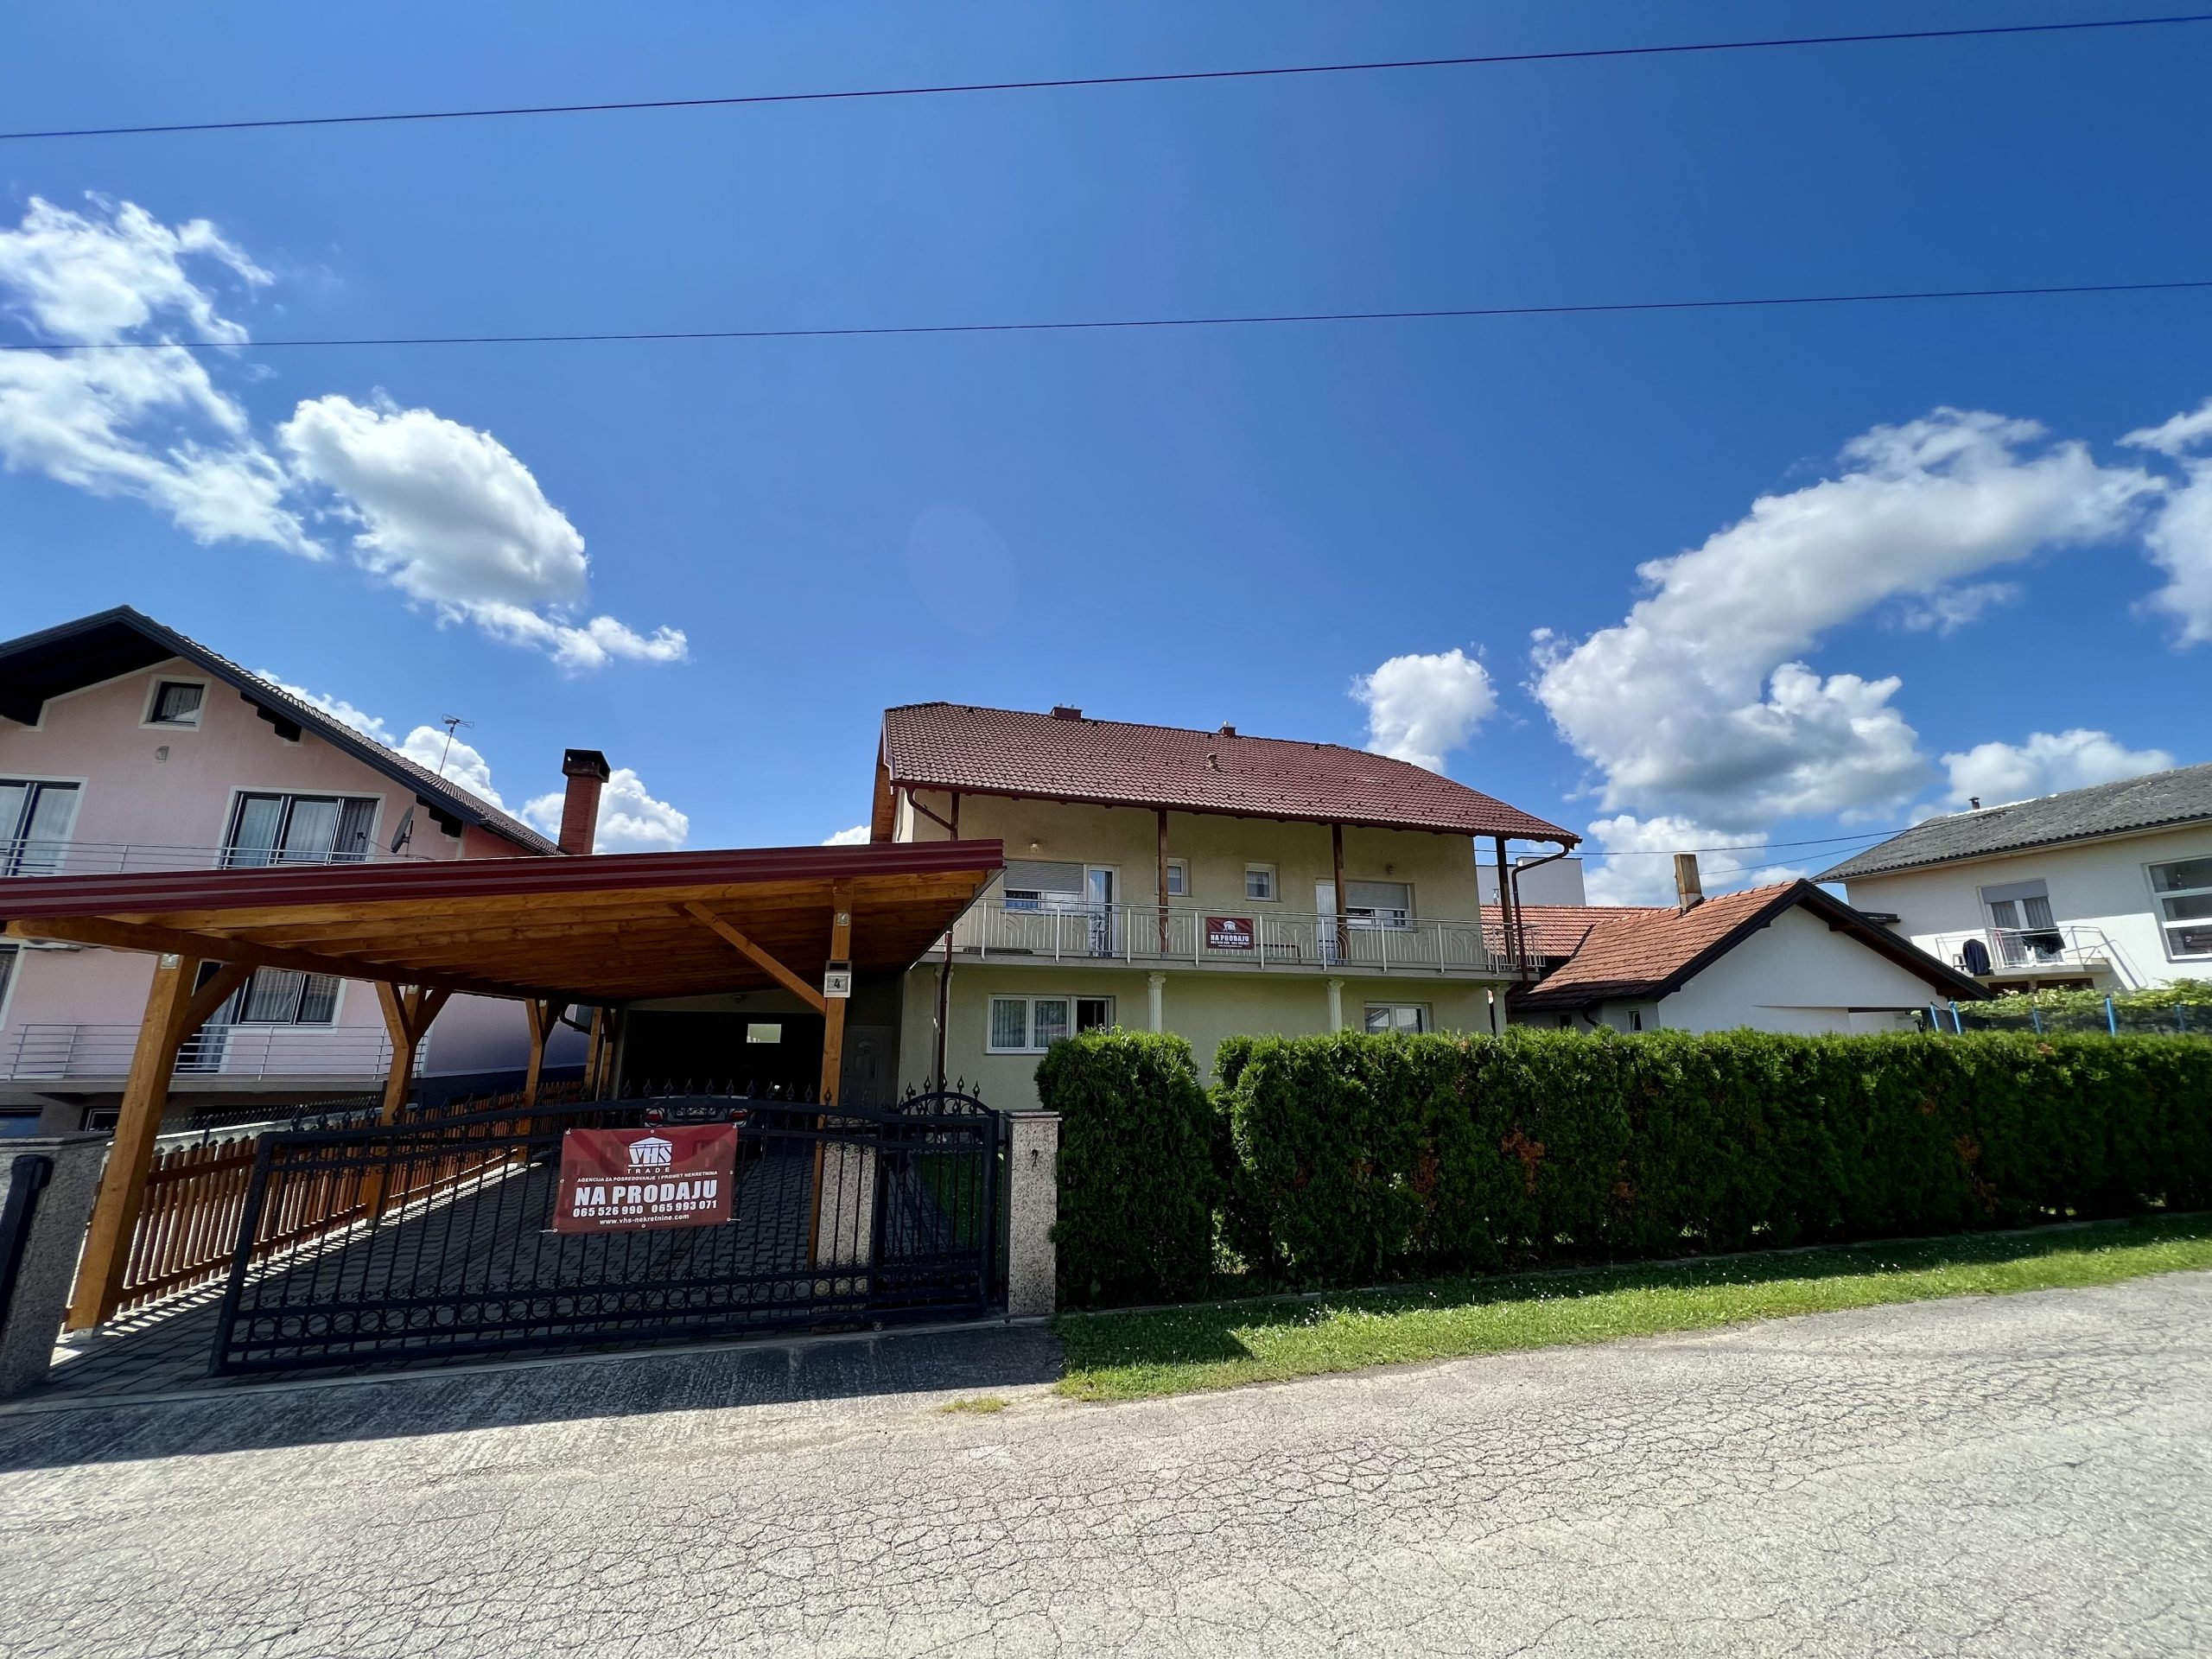 Kuća 220m2, Urije, Prijedor